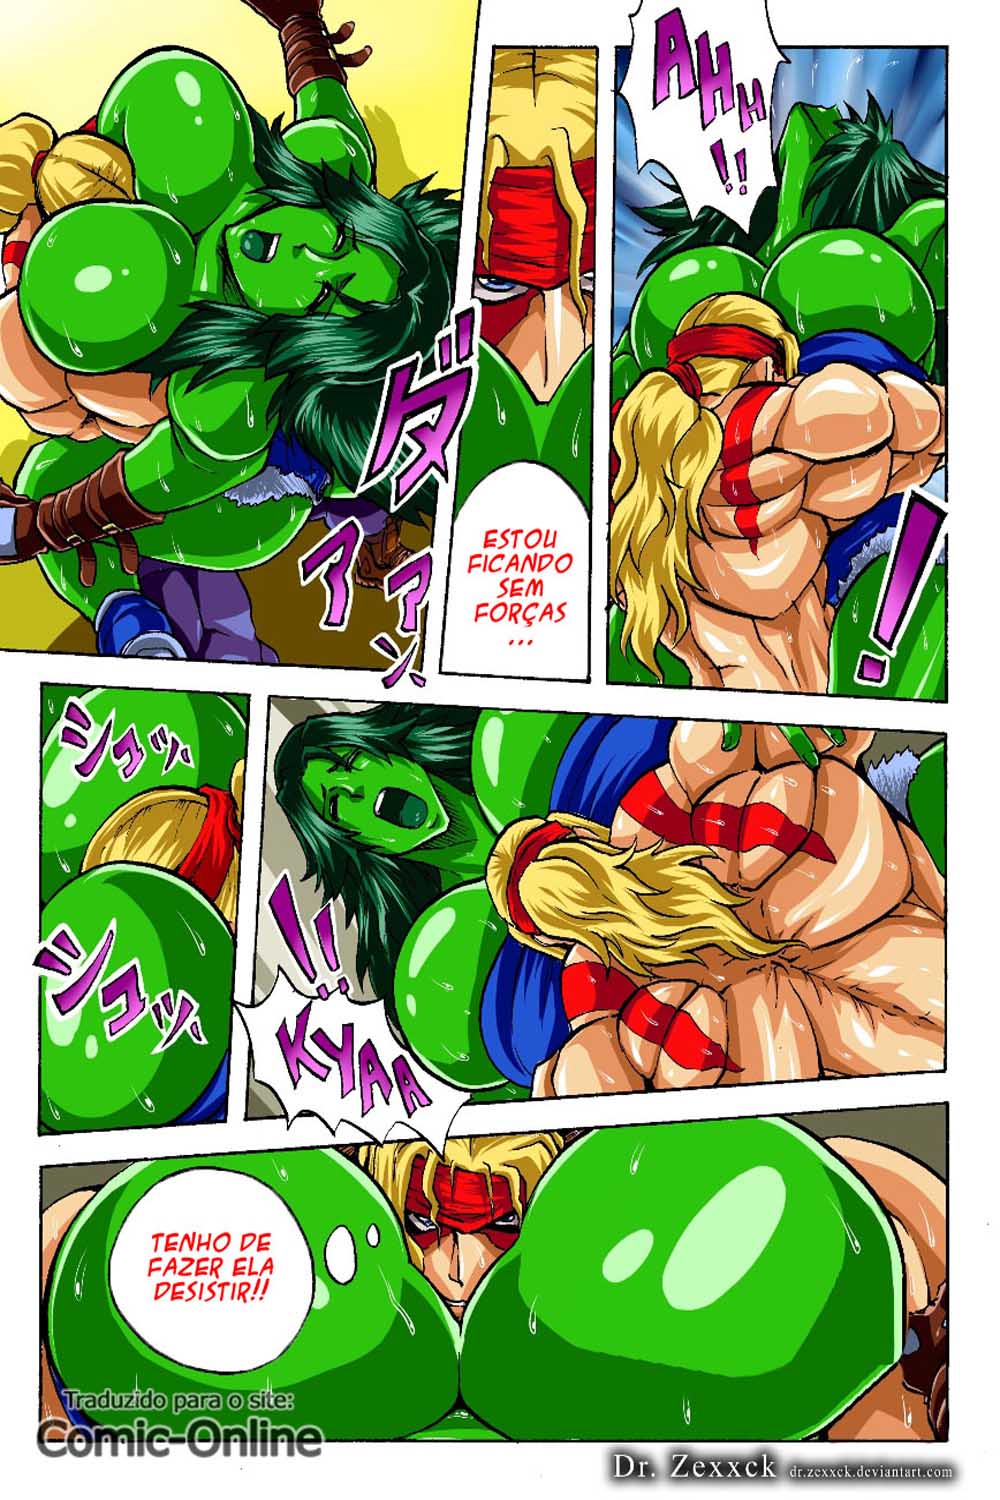 Hentaihome – She-Hulk a peituda – Heróis Pornô (5)